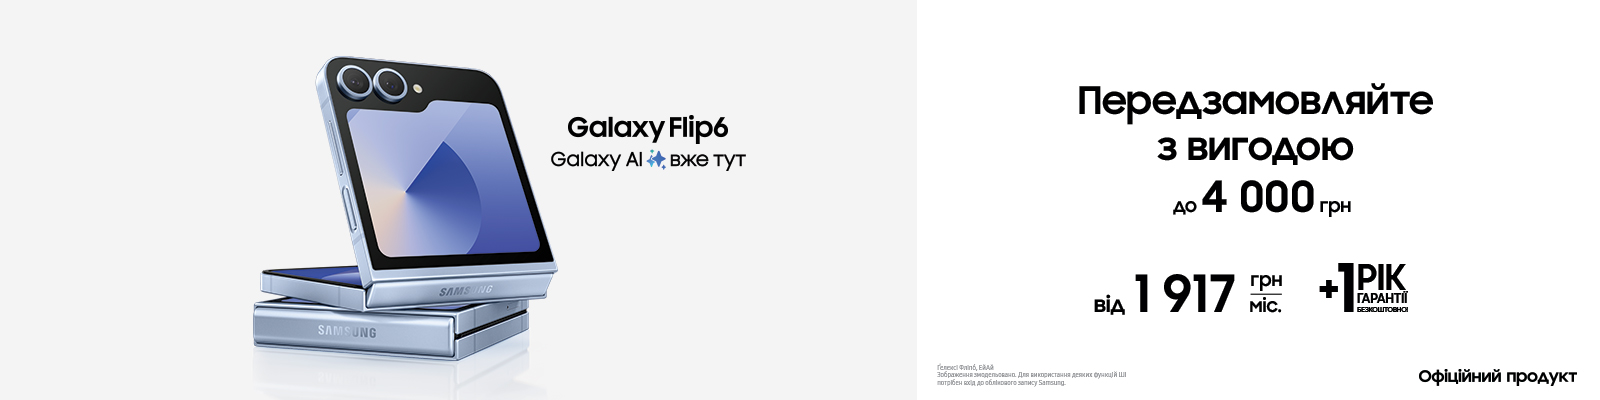 Передзамовляйте з вигодою Galaxy Flip 6